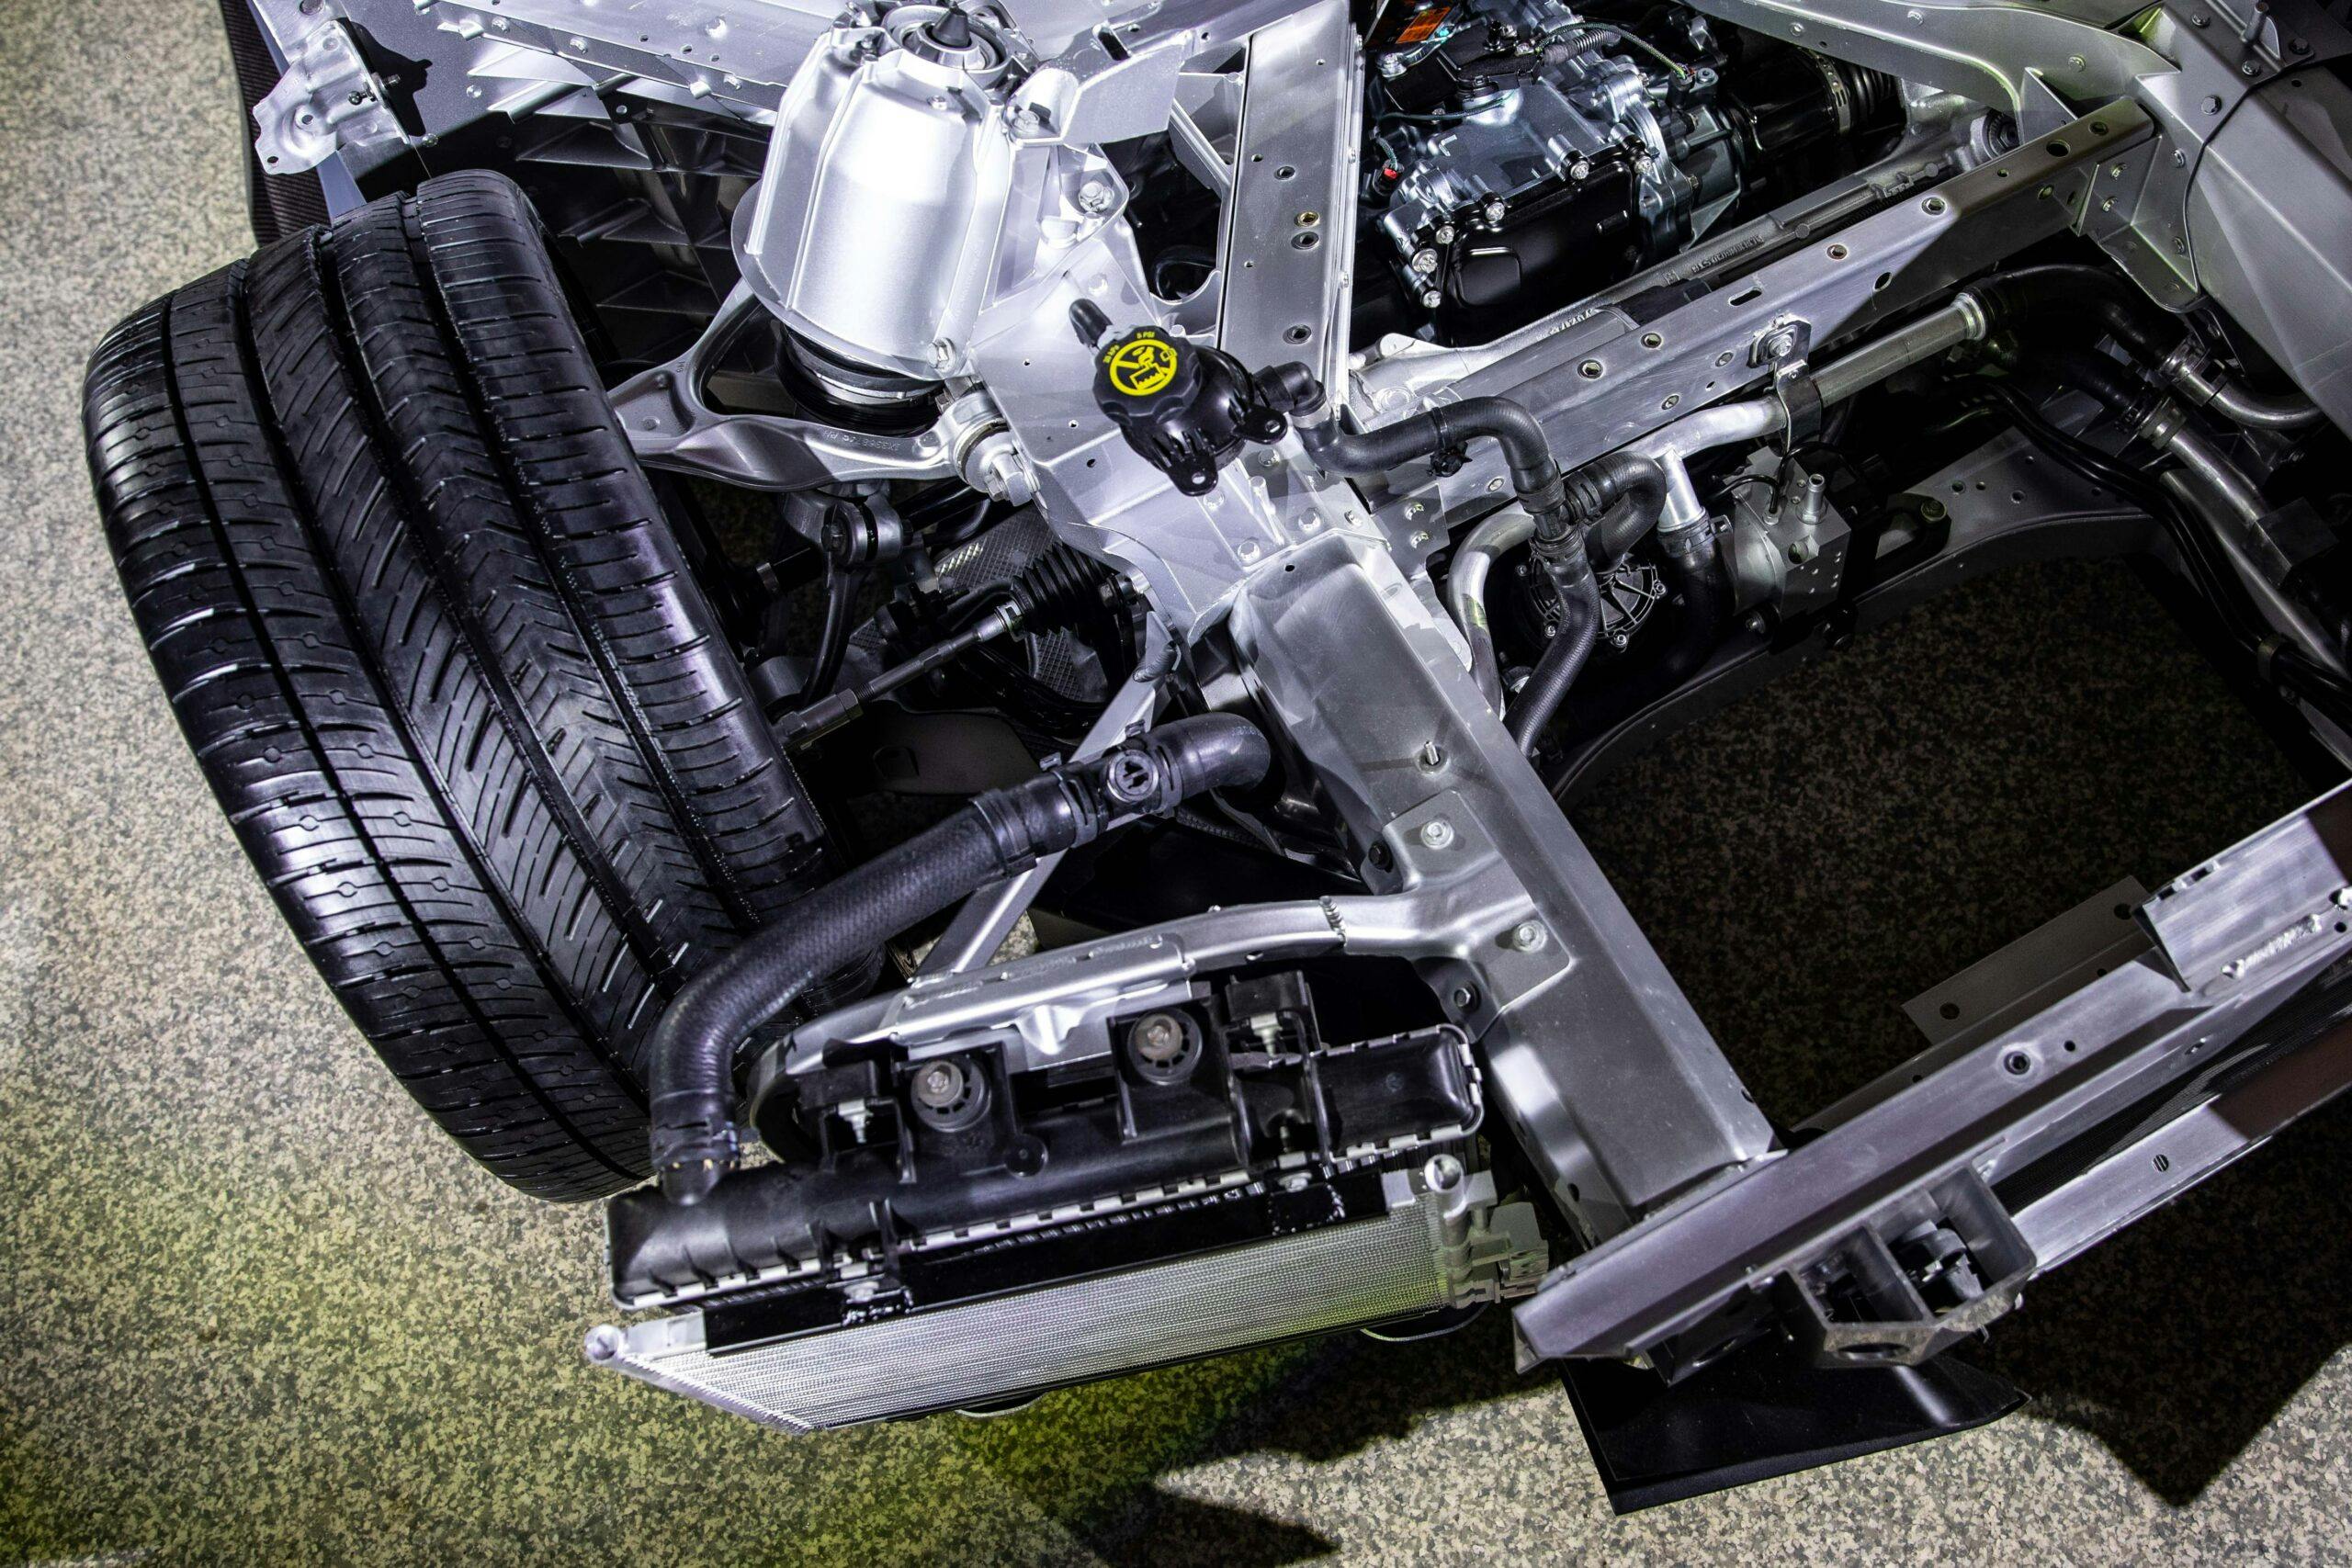 New Corvette E-Ray hybrid front end frame cooler